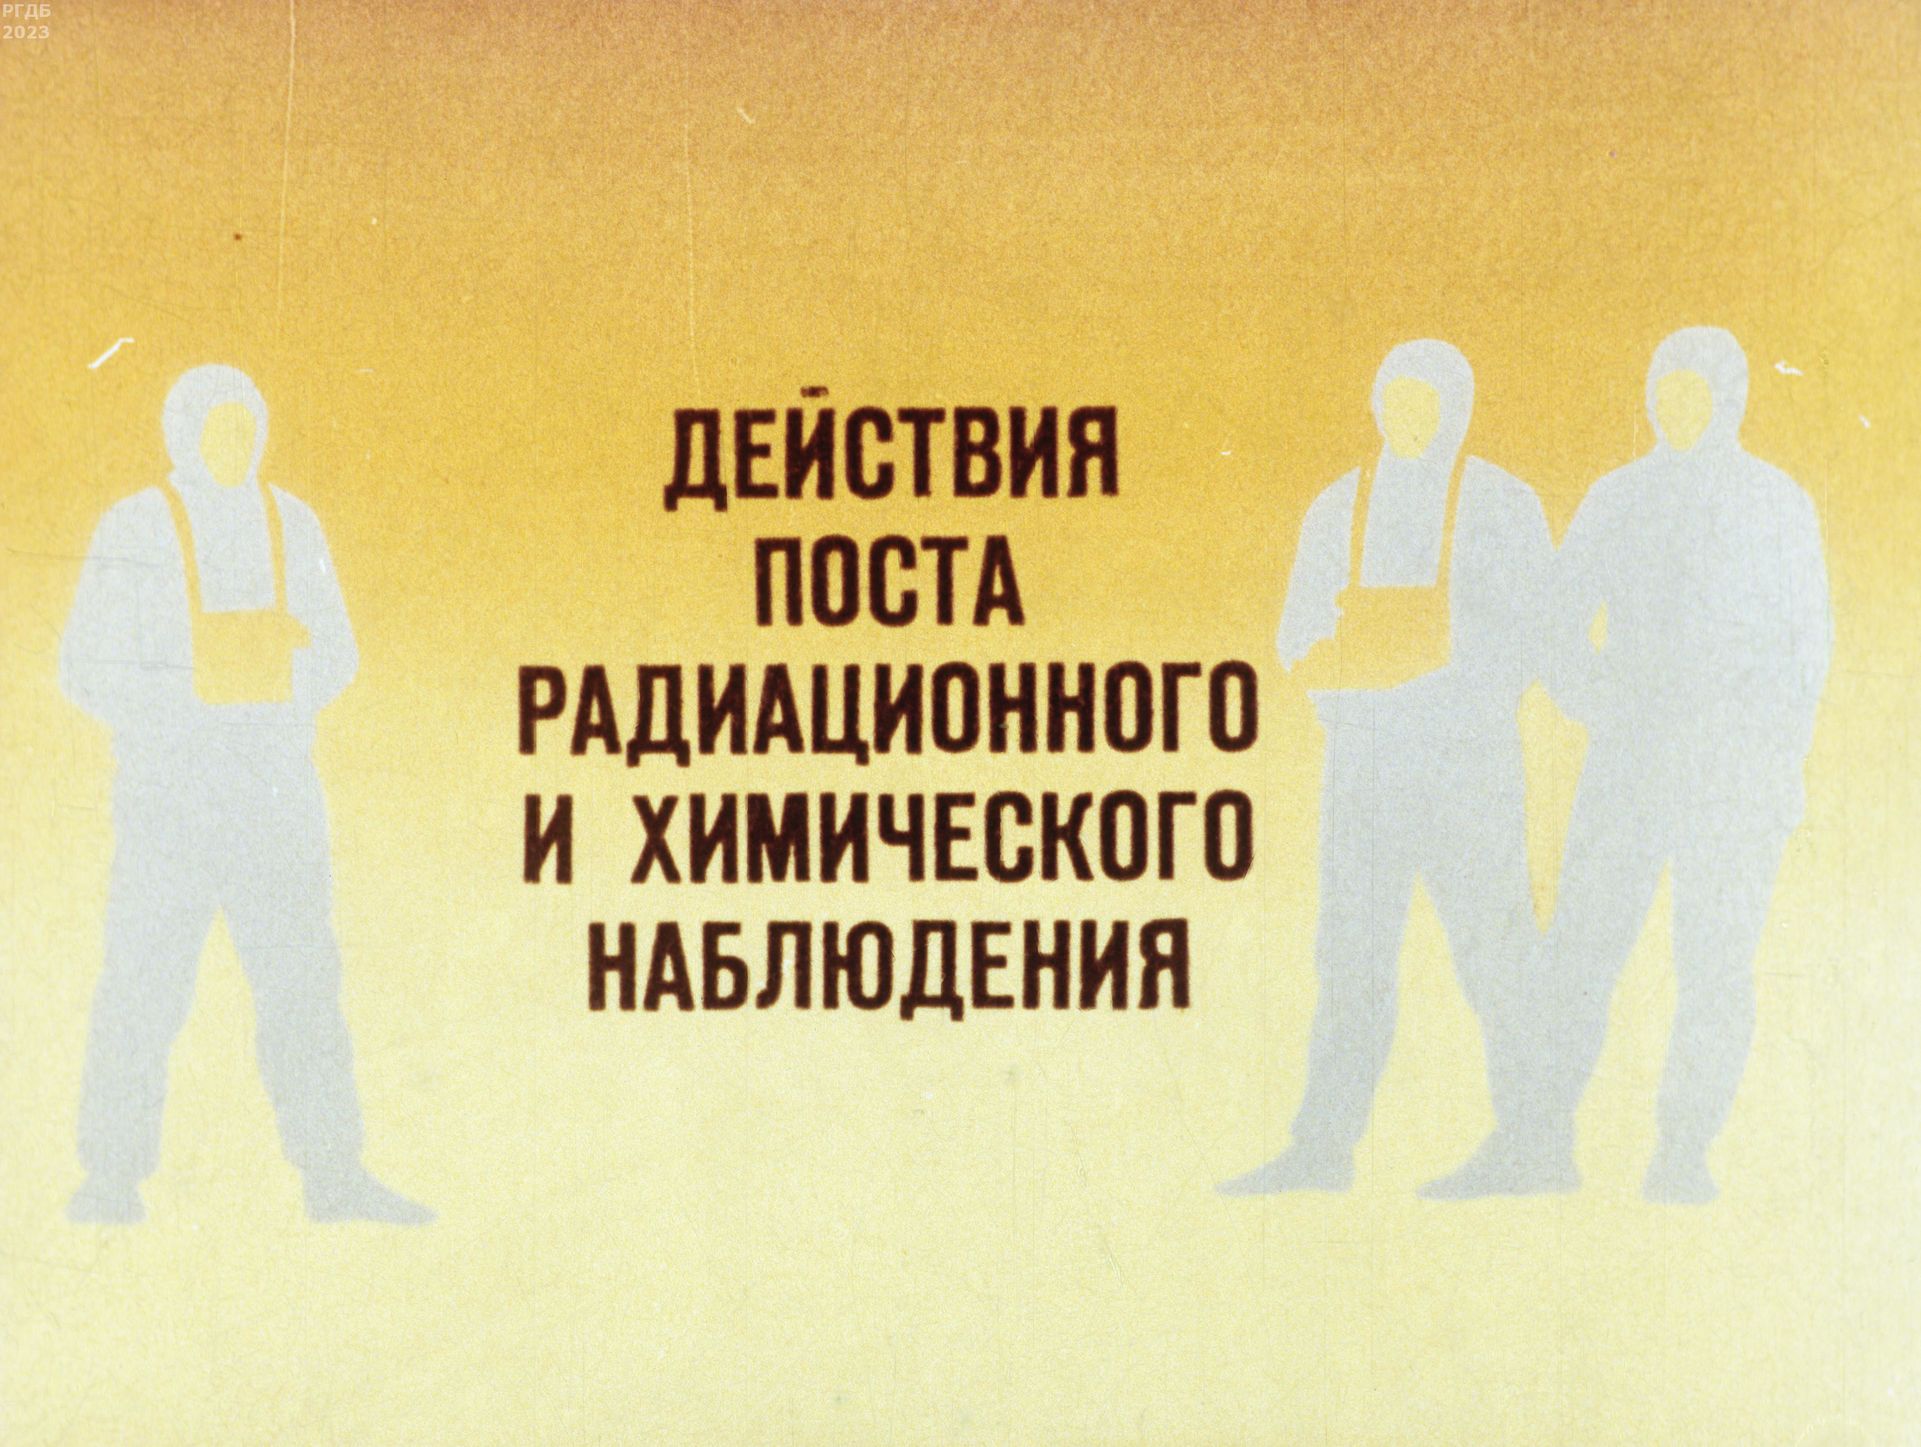 Максимов М. - Действия поста радиационного и химического наблюдения - 1985